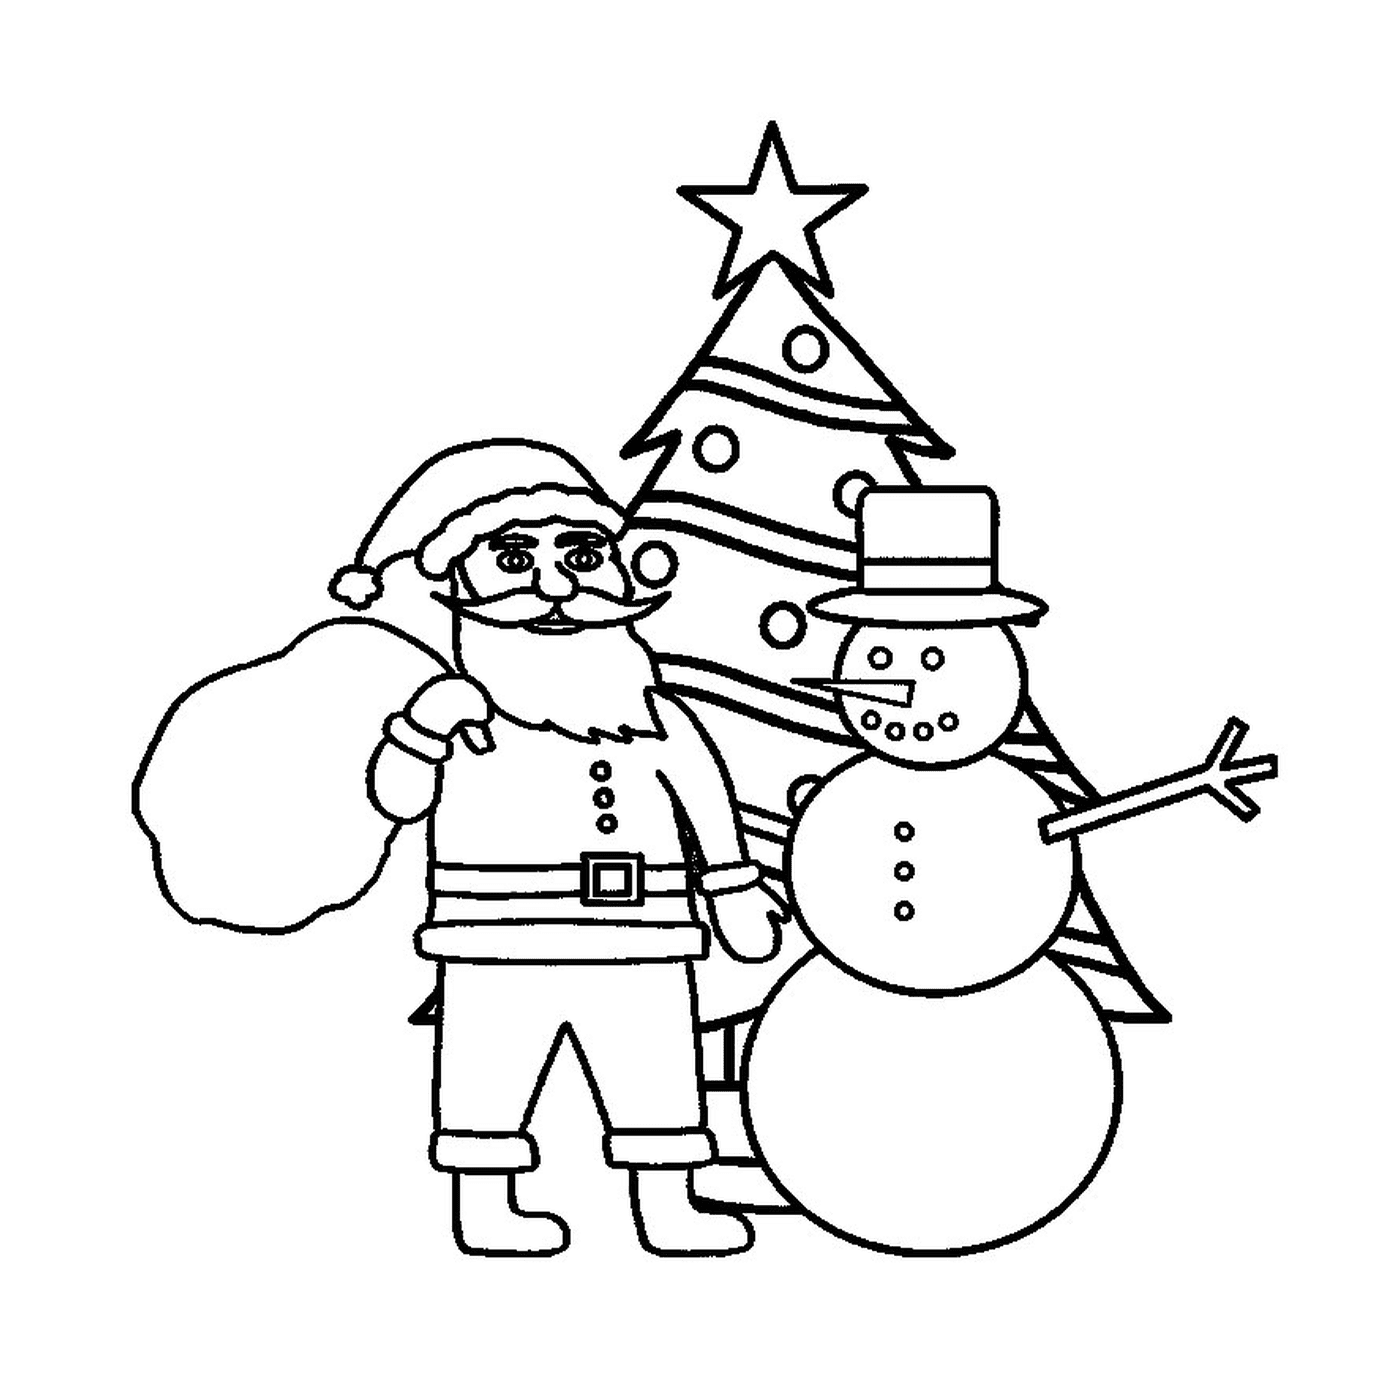  Santa and snowman 